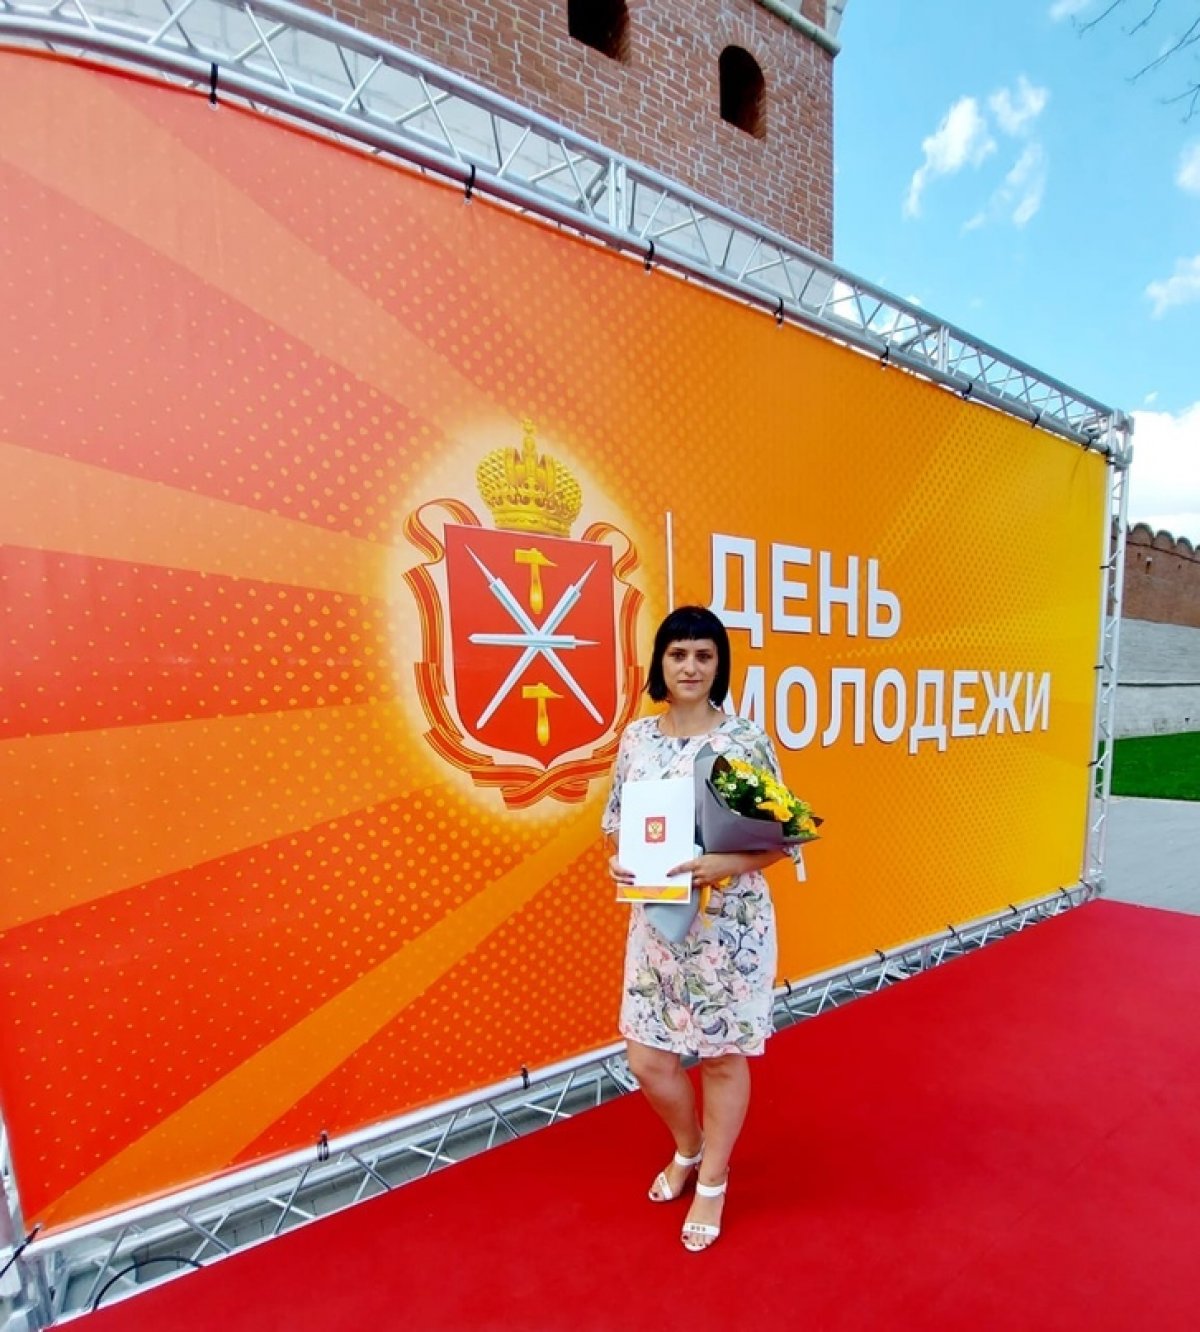 26 июня 2020 года на территории Тульского Кремля состоялось награждение волонтеров, которые в период пандемии участвовали в акции